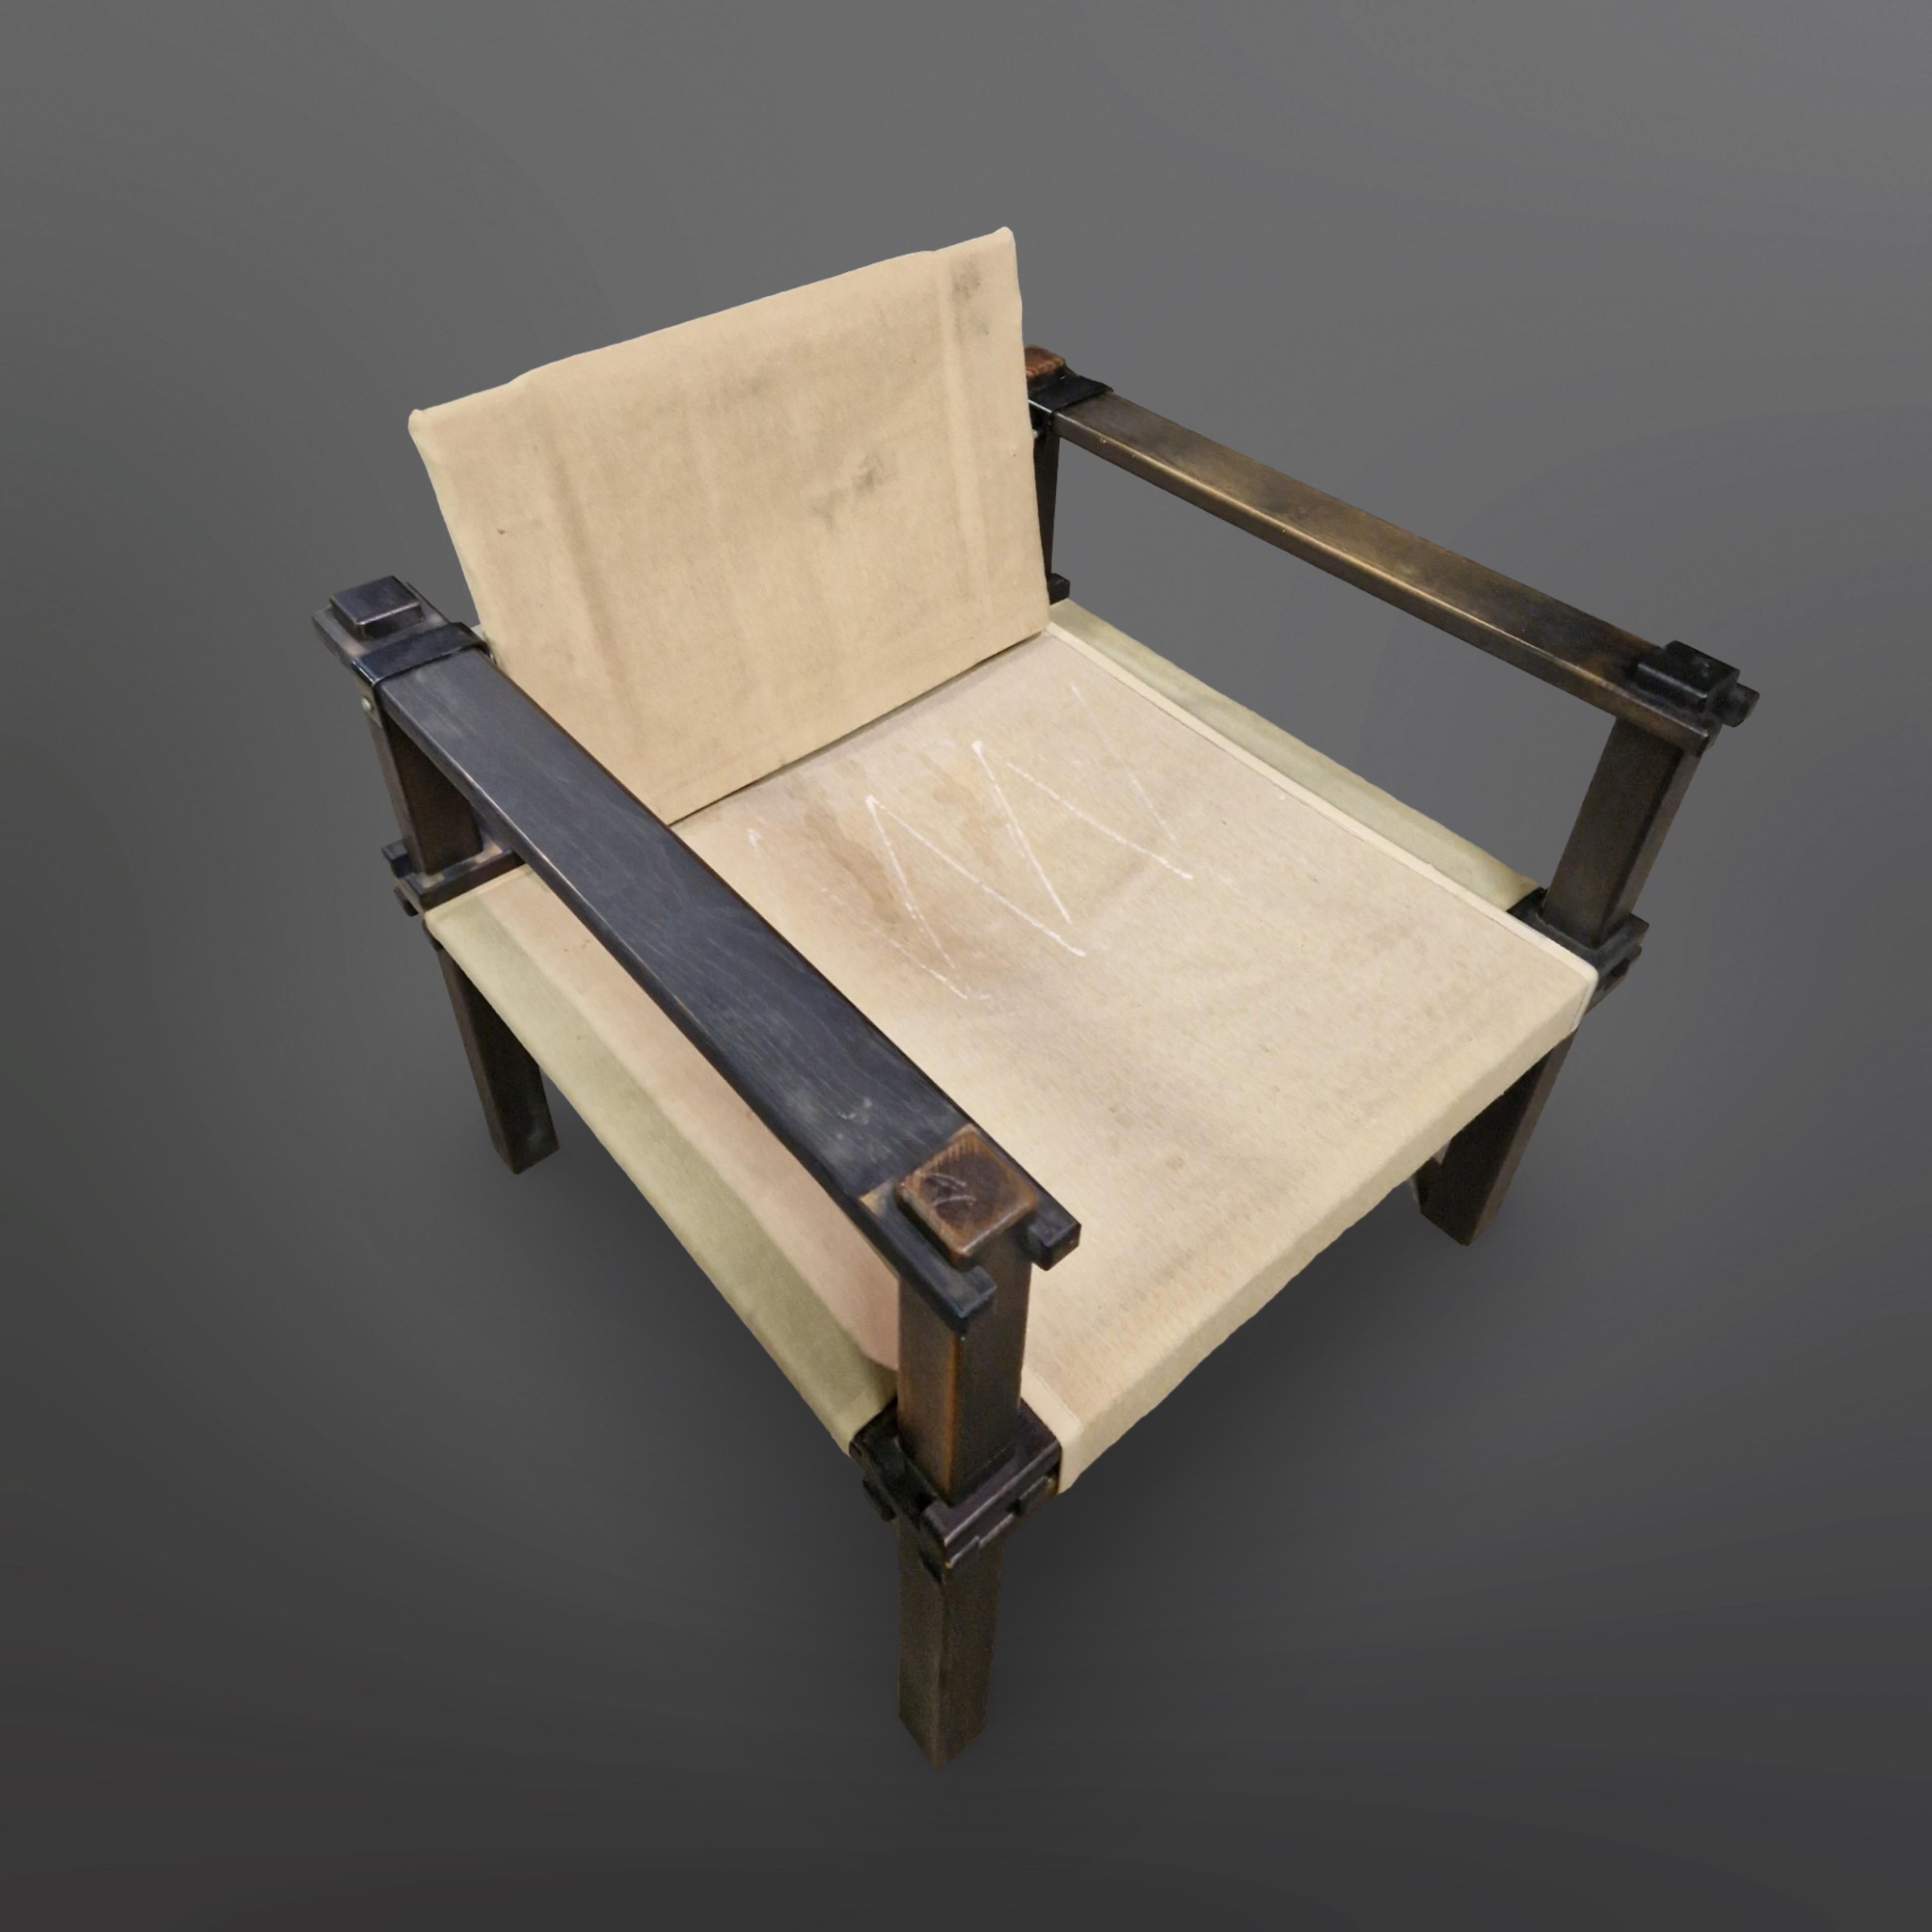 Original Bauernstühle und passende Beistelltische. Entworfen von Gerd Lange für Bofinger in den 1960er Jahren. Sie sind vollständig aus Holz mit ausgeklügelten Holzverbindungen gefertigt. Die Konstruktion des Stuhls wird durch die überlappende